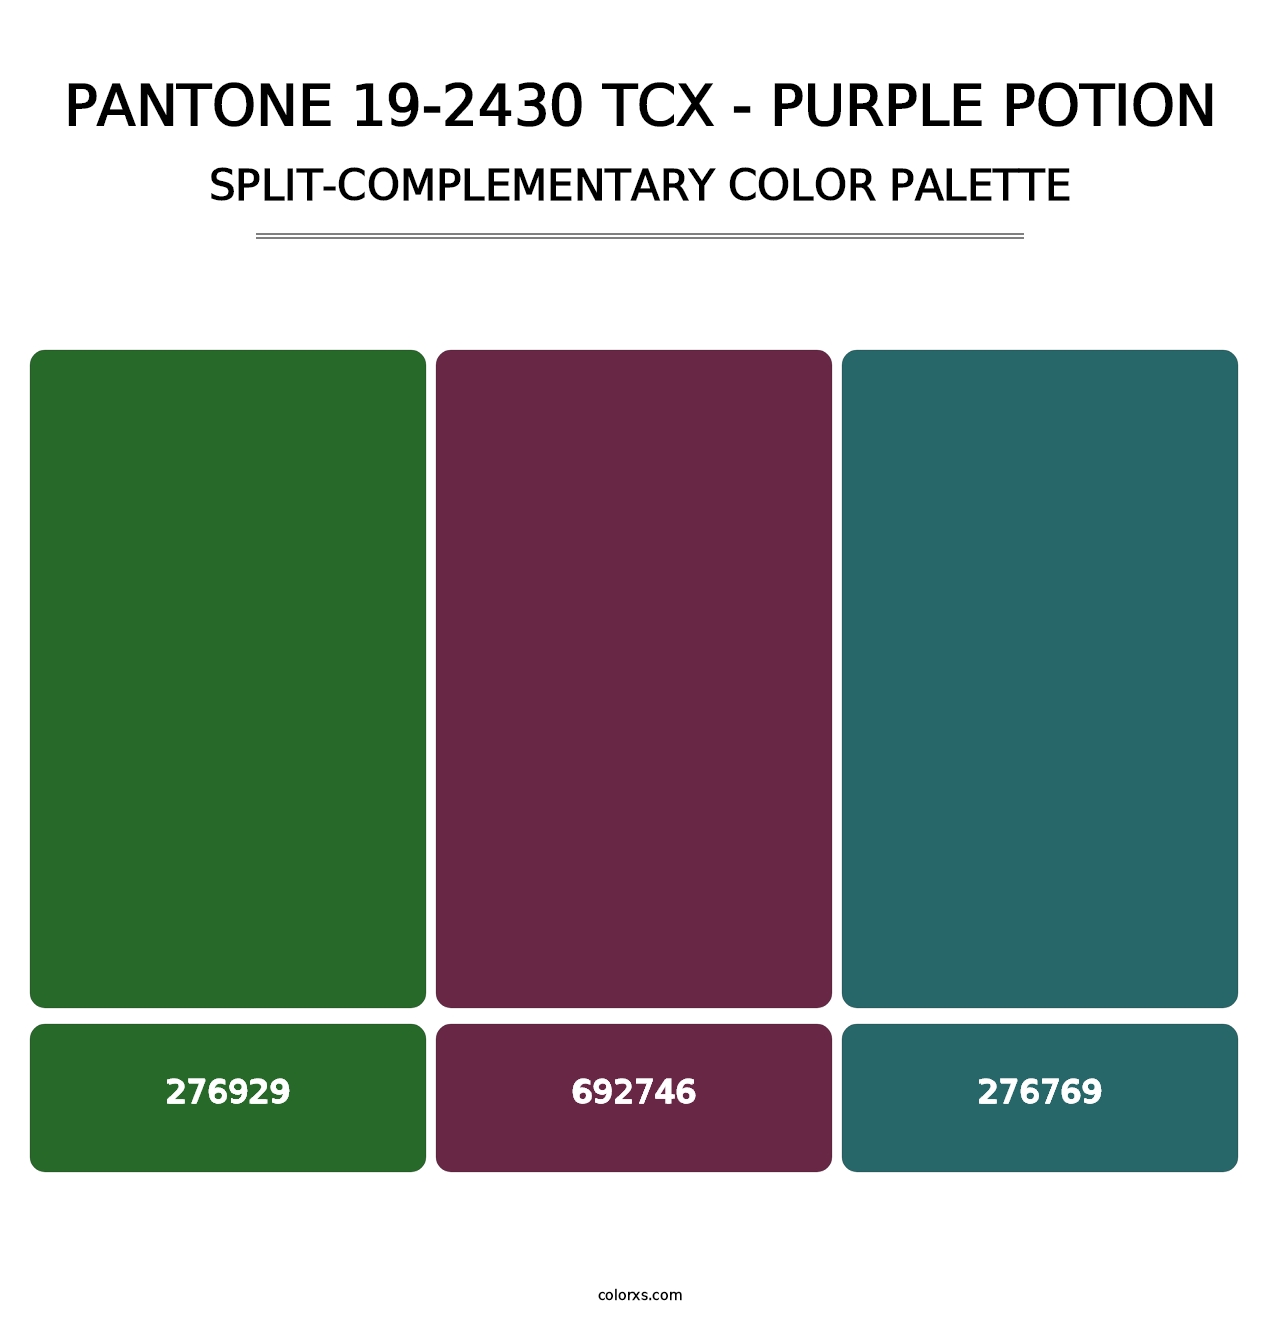 PANTONE 19-2430 TCX - Purple Potion - Split-Complementary Color Palette